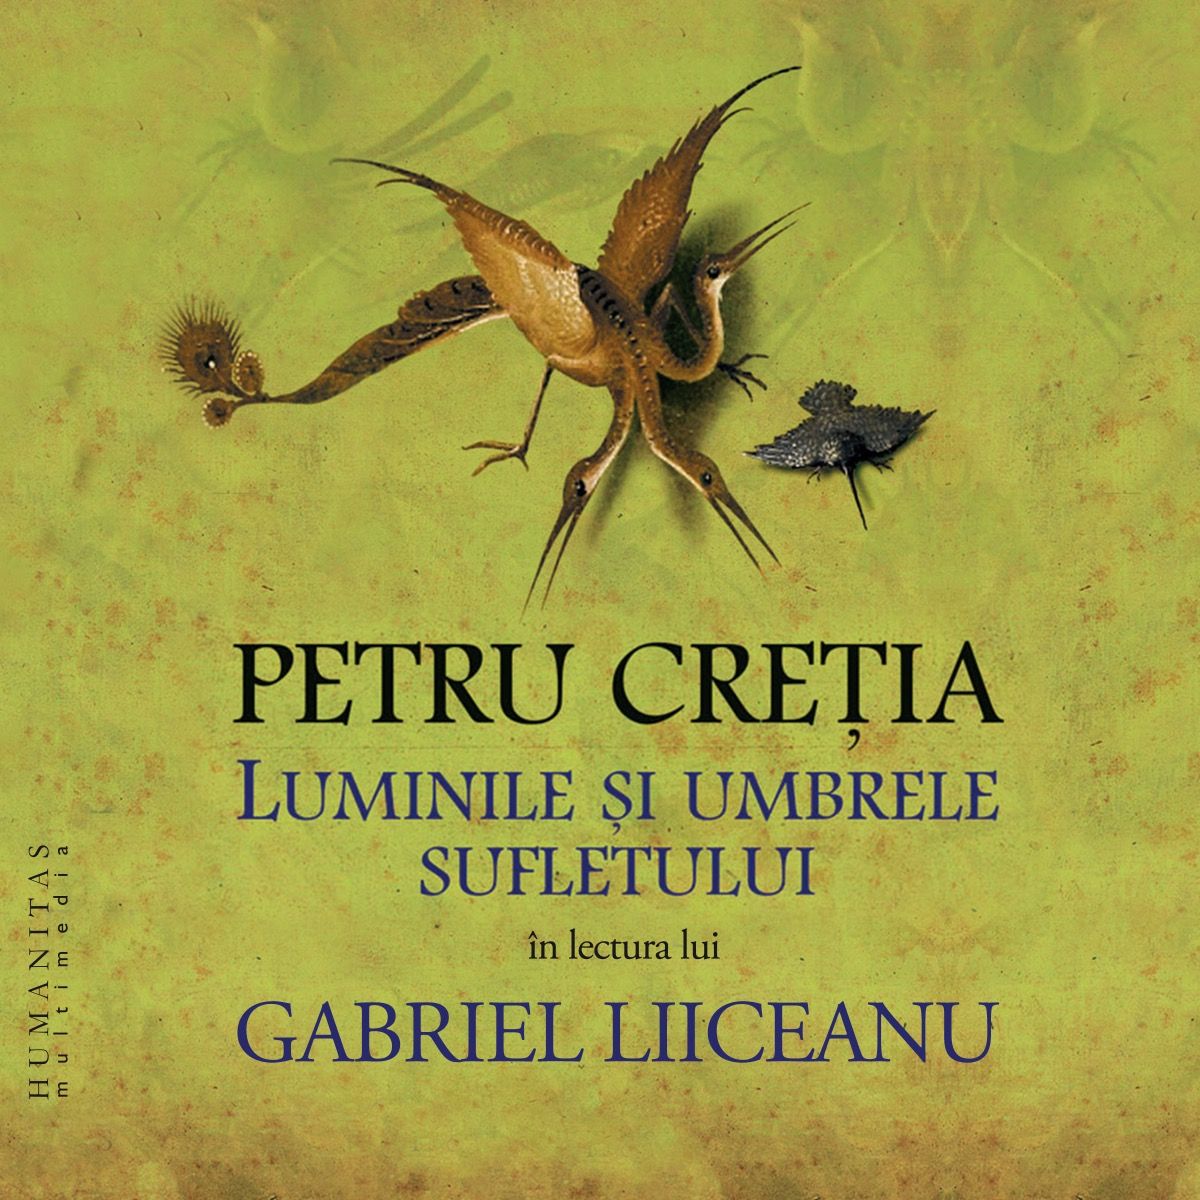 Luminile si umbrele sufletului | Petru Cretia carturesti.ro poza noua